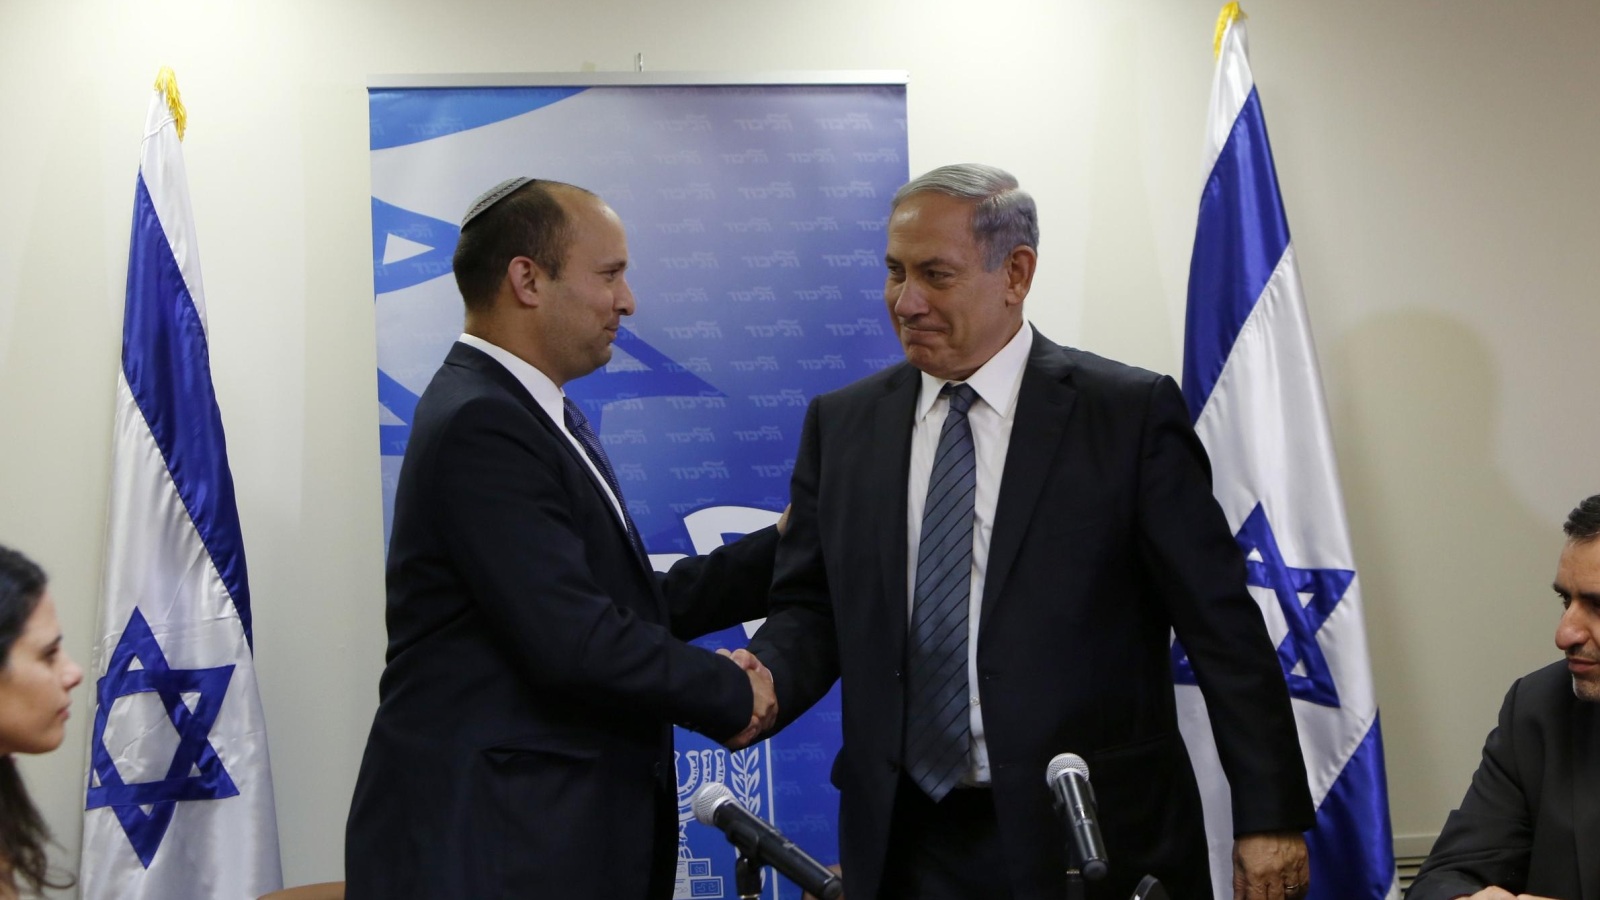 ‪(غيتي)‬ زعيم حزب البيت اليهودي نفتالي بينيت (يسار) يصافح رئيس الوزراء بنيامين نتنياهو